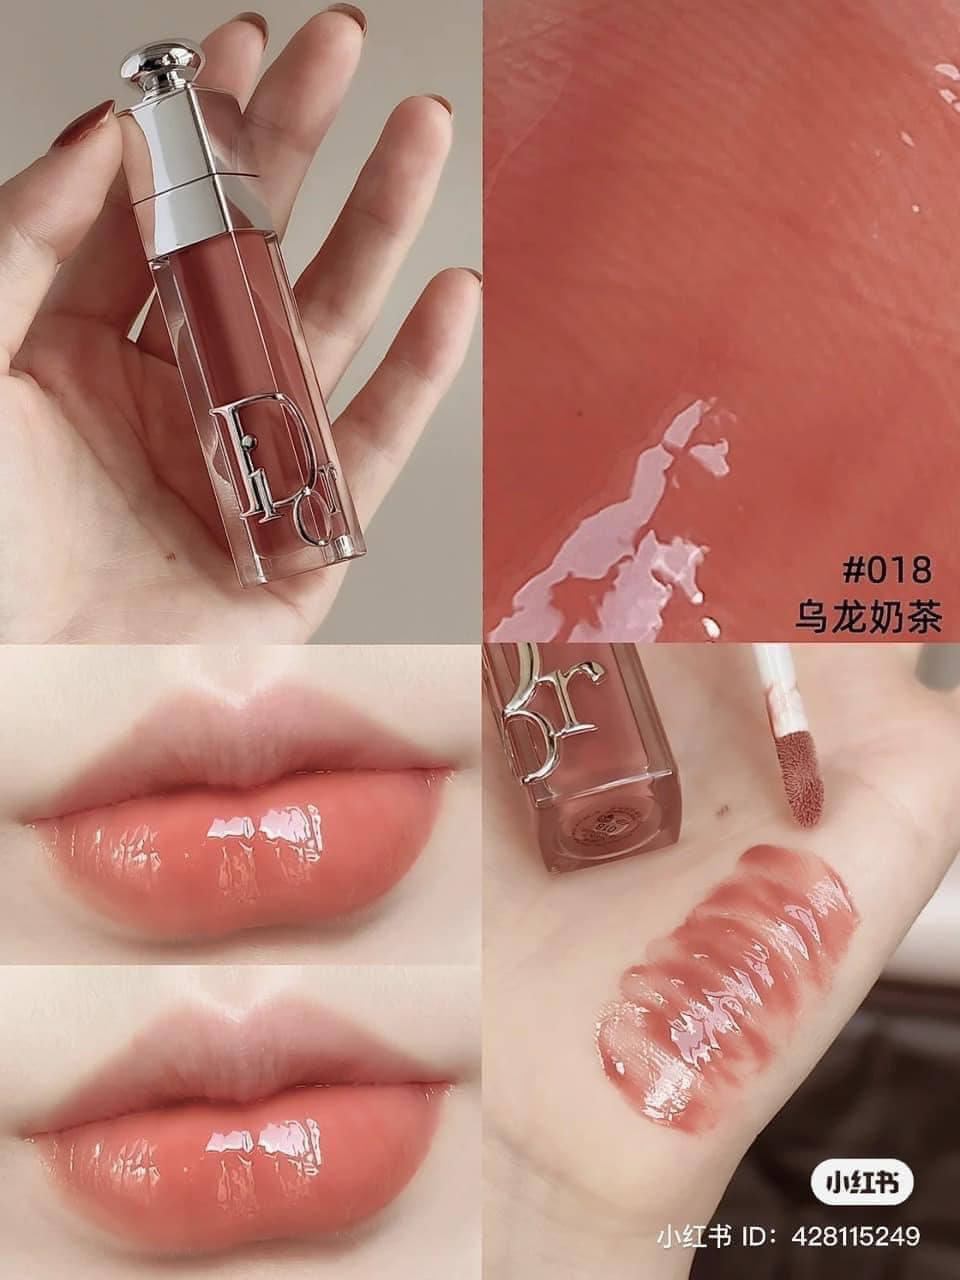 Son Dưỡng Dior Addict Lip Maximizer Collagen 020  Màu Đỏ Nâu  Vilip Shop   Mỹ phẩm chính hãng